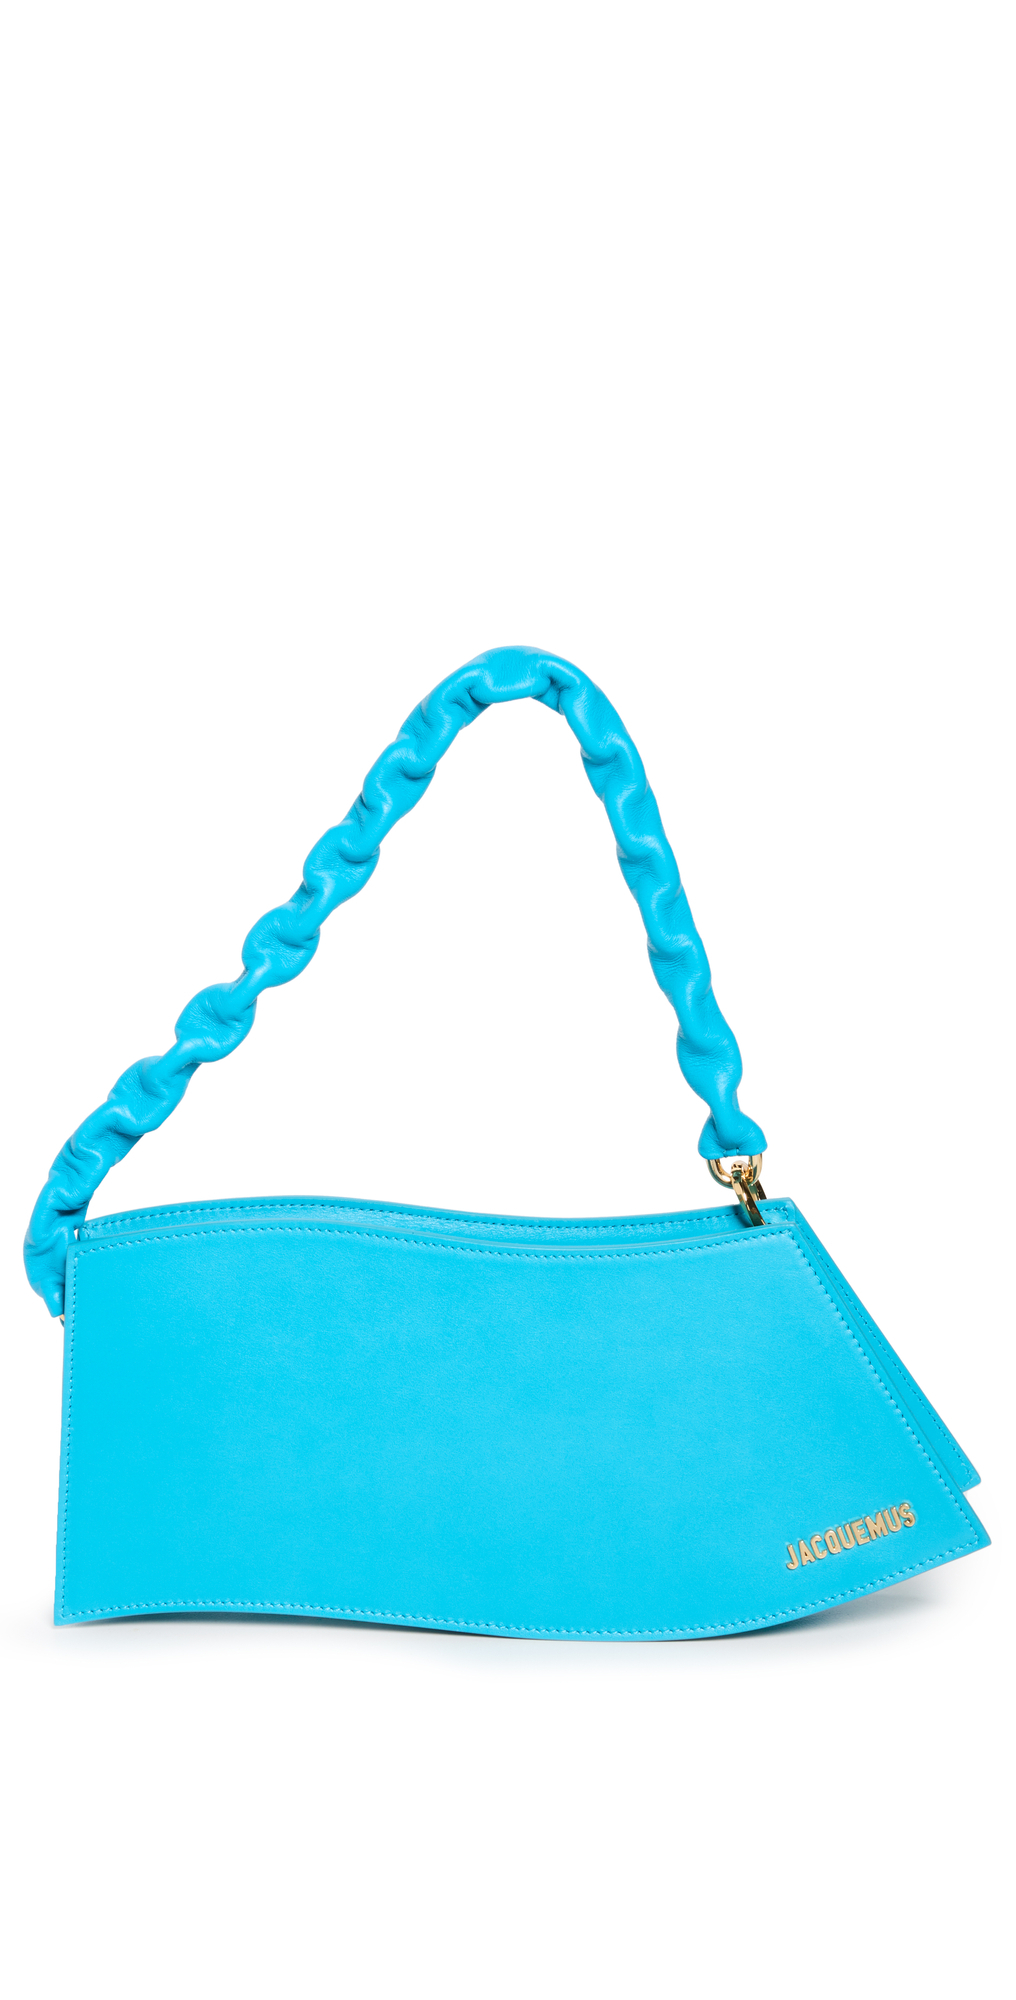 Jacquemus La Vague Shoulder Bag in turquoise